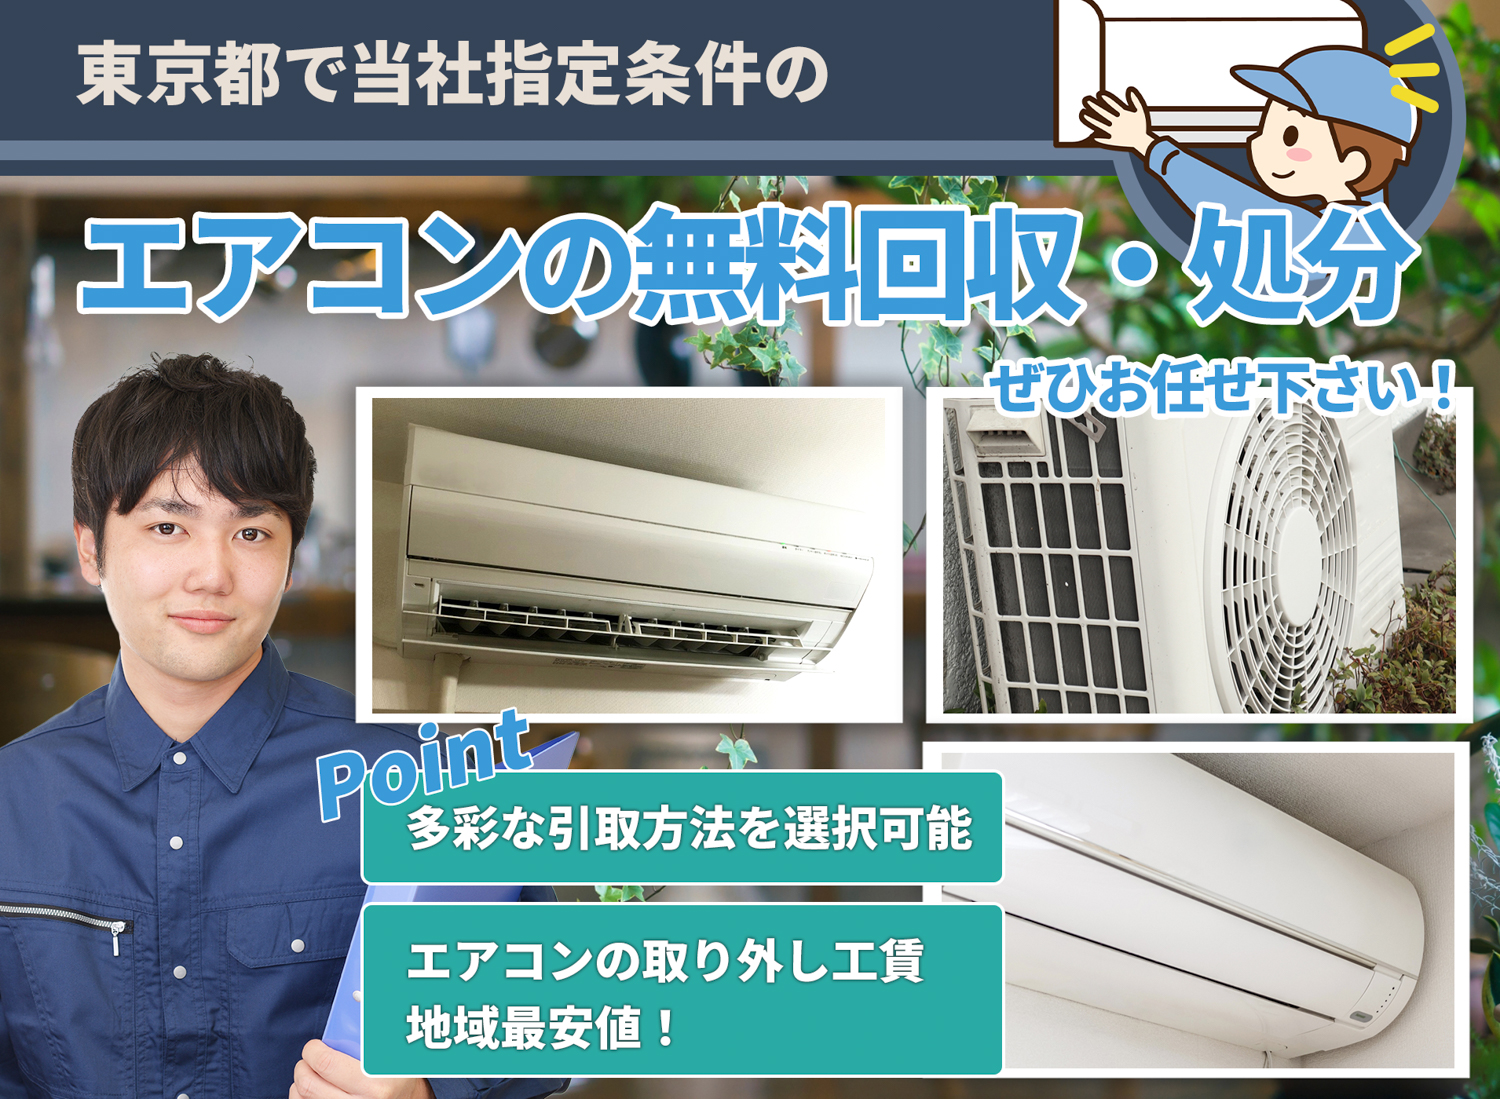 東京都のサービスで地域一番を目指すエアコン無料回収処分隊のエアコン無料回収サービス